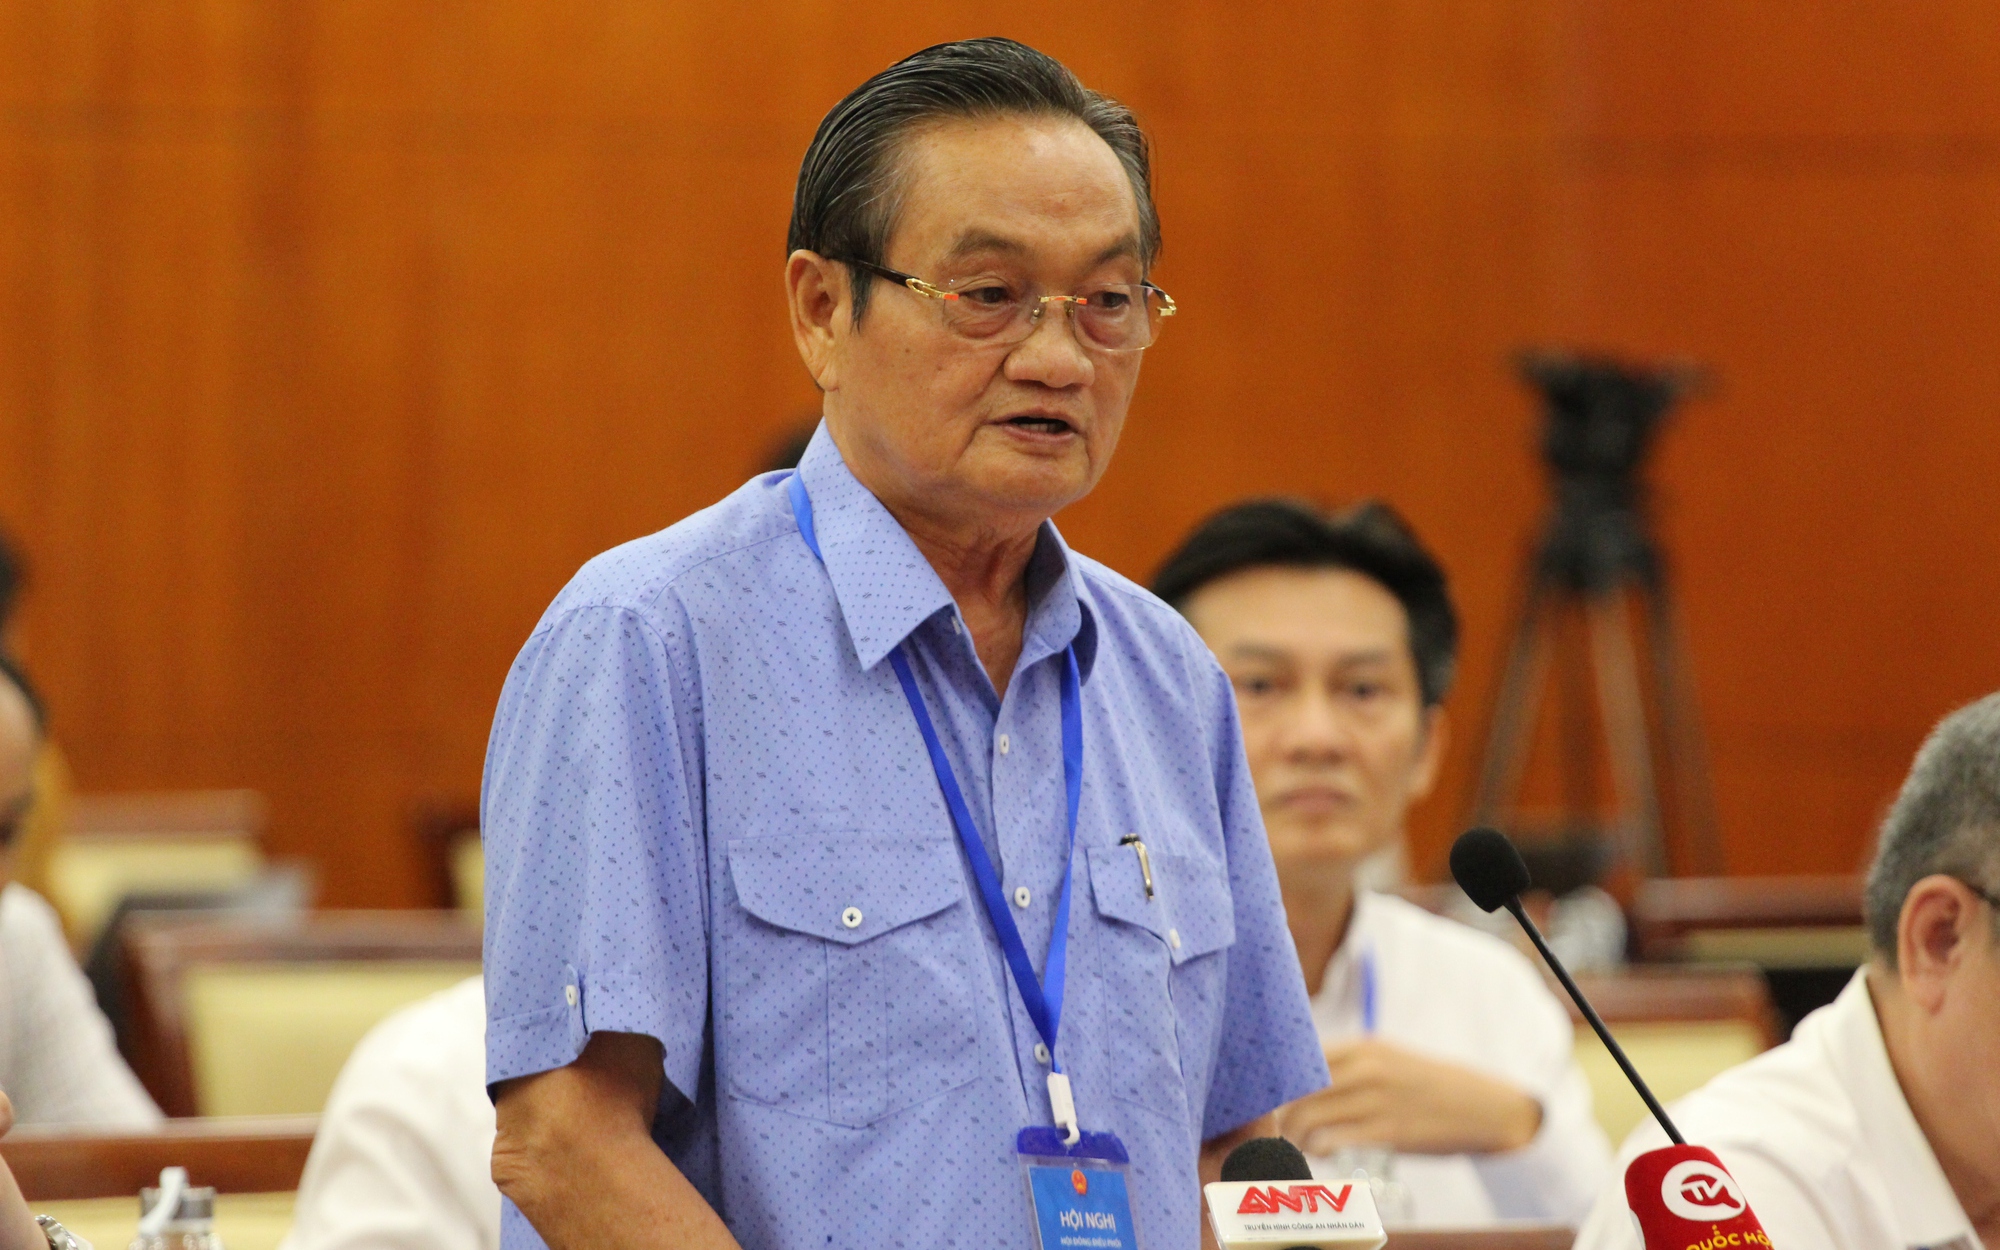 TS Trần Du Lịch làm Chủ tịch Hội đồng tư vấn thực hiện Nghị quyết 98